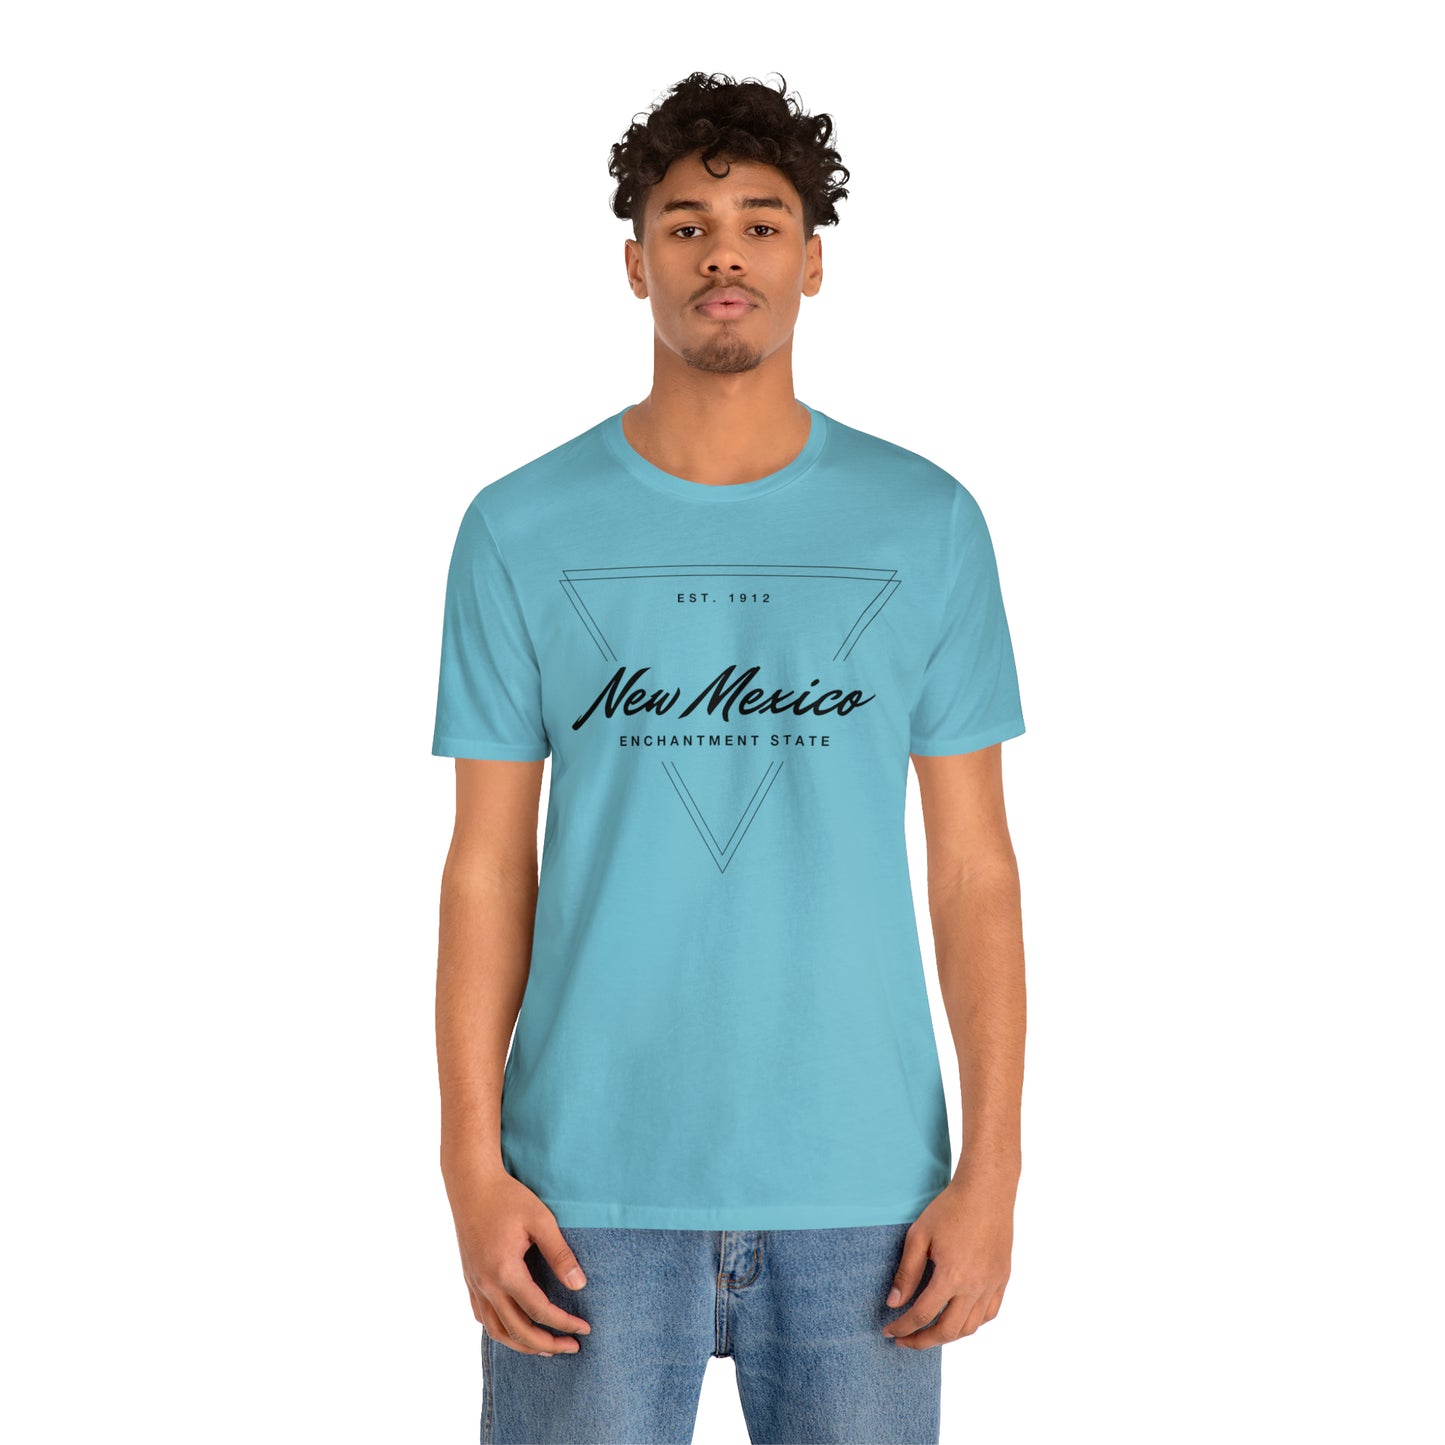 New Mexico Geometric Shirt